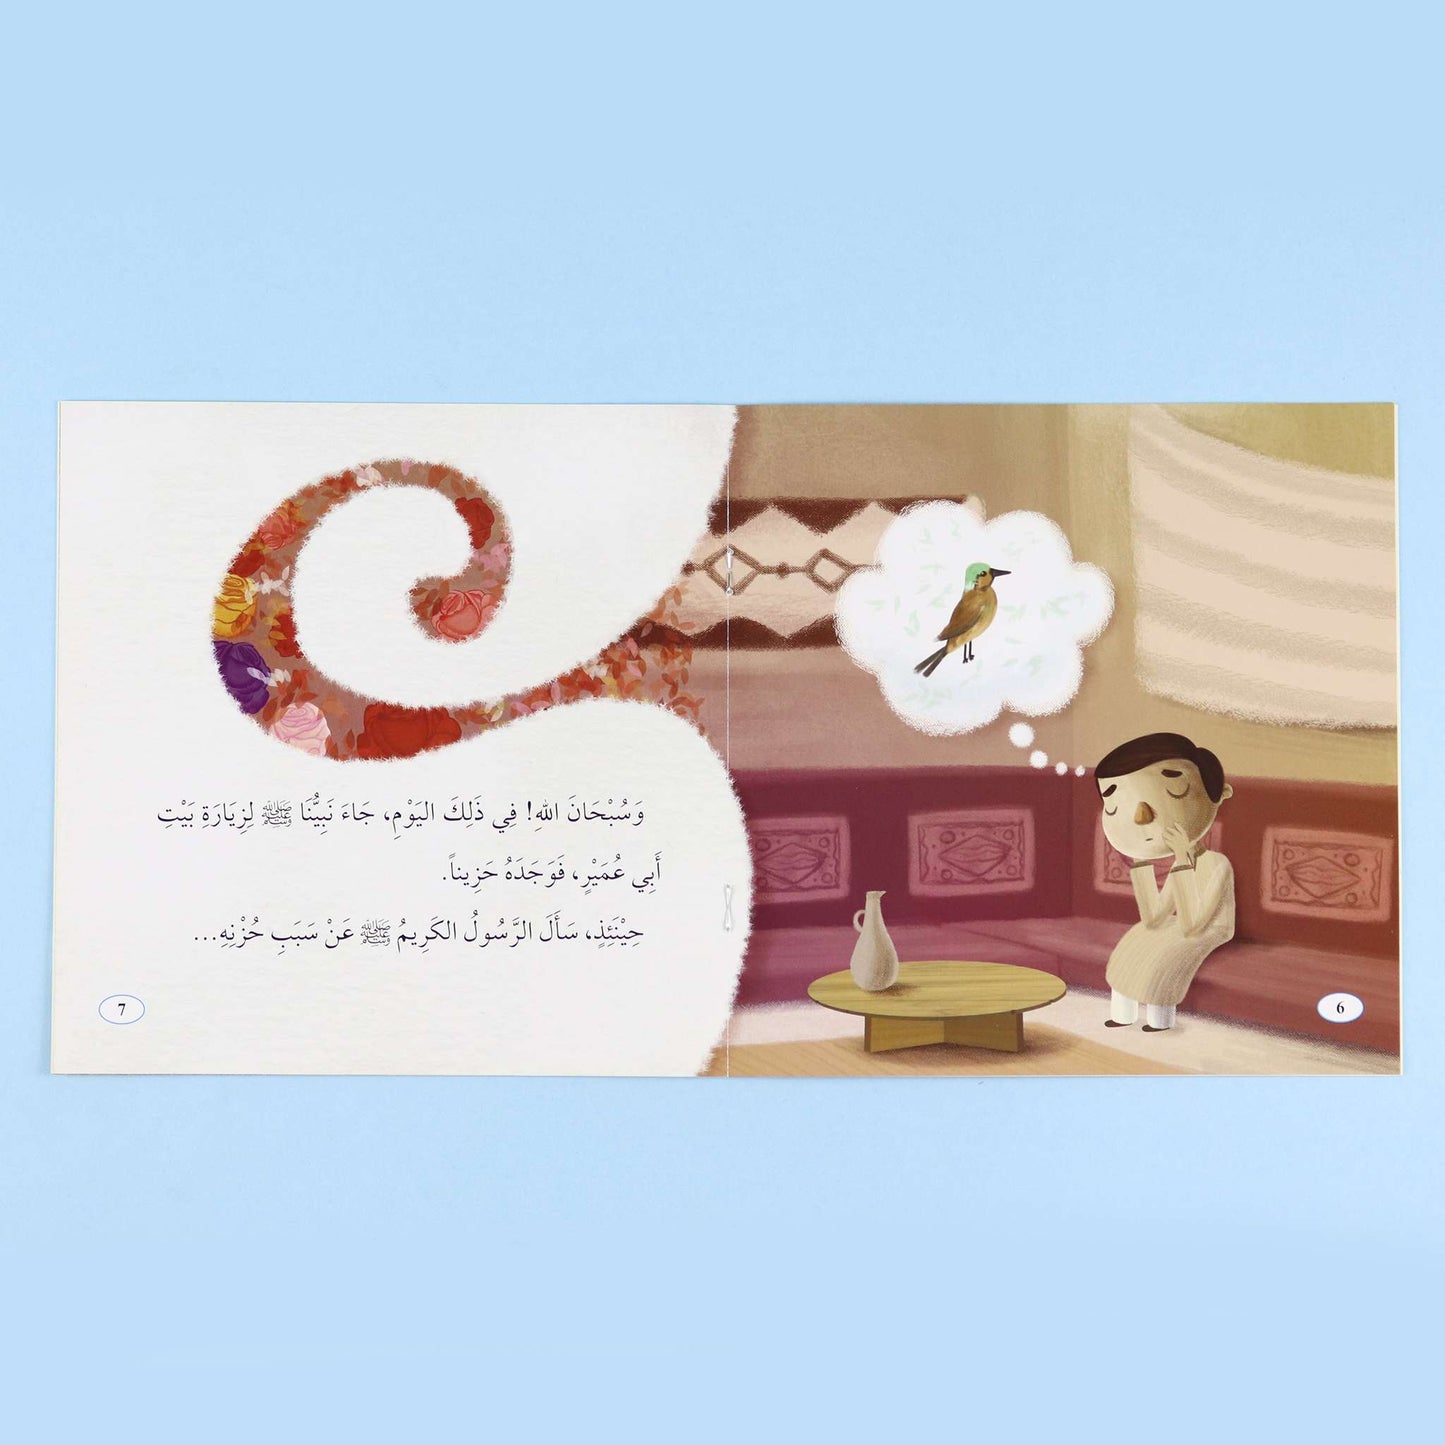 الصحابة الصغار - سلسلة من أدب الإسلام - المستوى الأول - 6 قصص